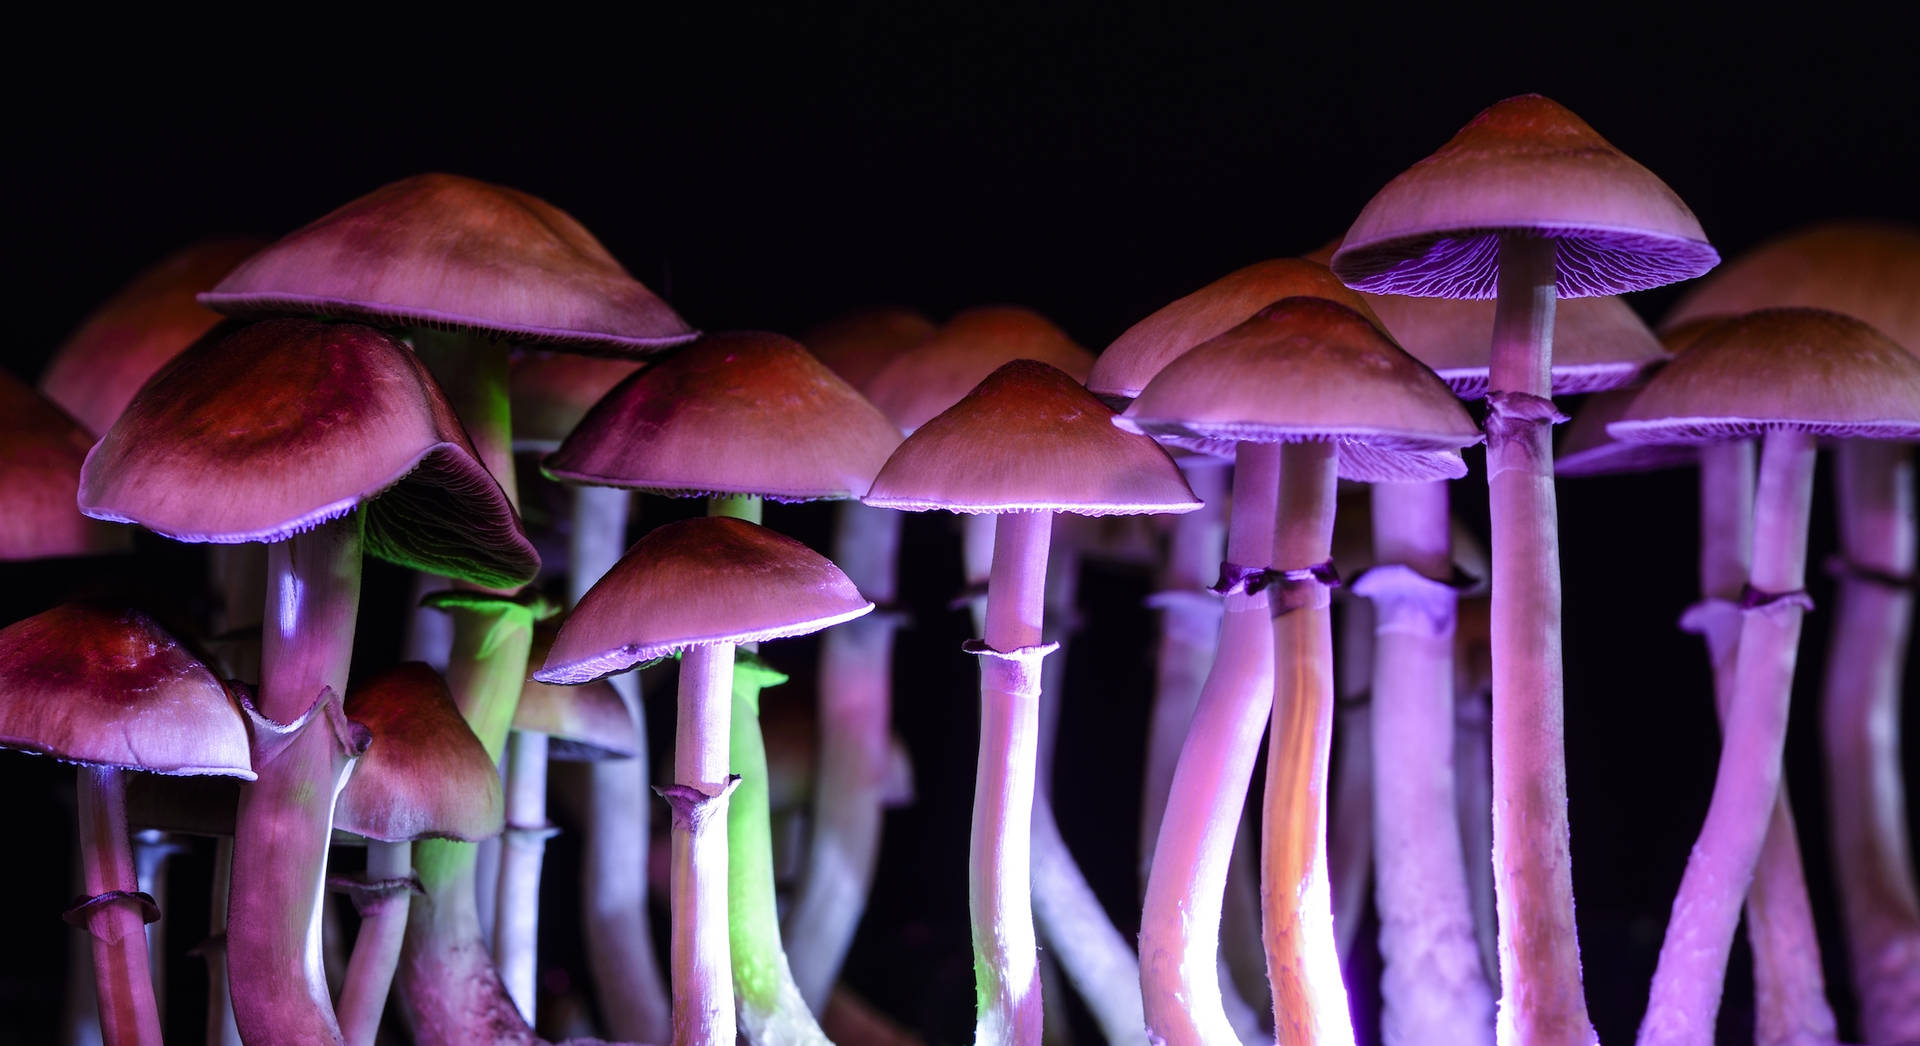 Lys og farverig psykedelisk svamp begejstrer naturelskere Wallpaper